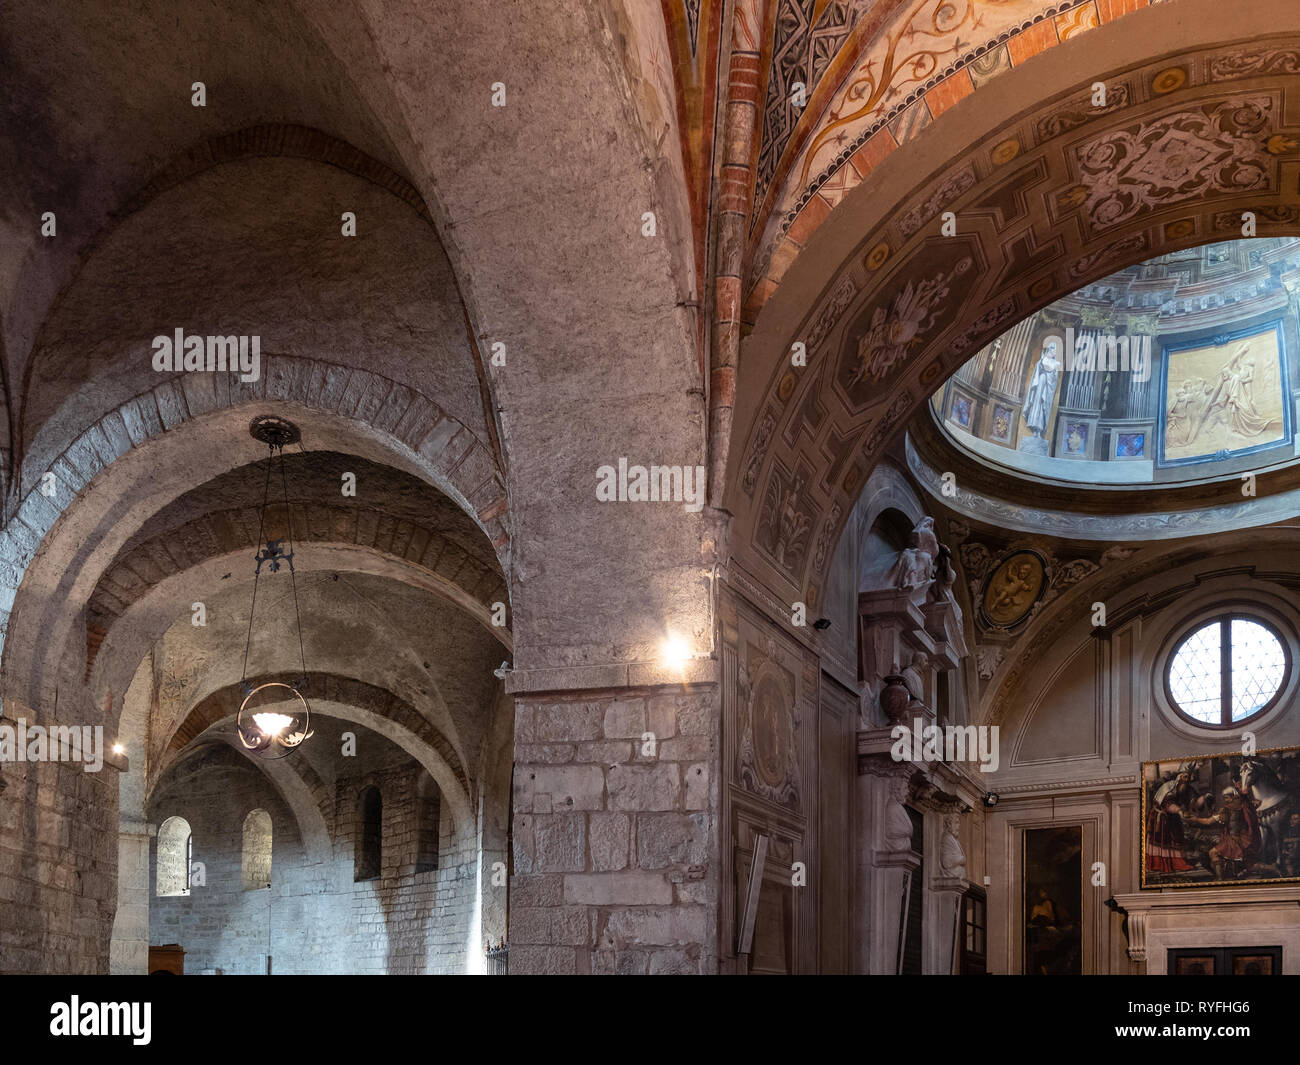 BRESCIA, Italia - 21 de febrero de 2019: interior del Duomo Vecchio (la antigua catedral, Rotonda, Concattedrale invernale di Santa Maria Assunta) de Brescia Foto de stock